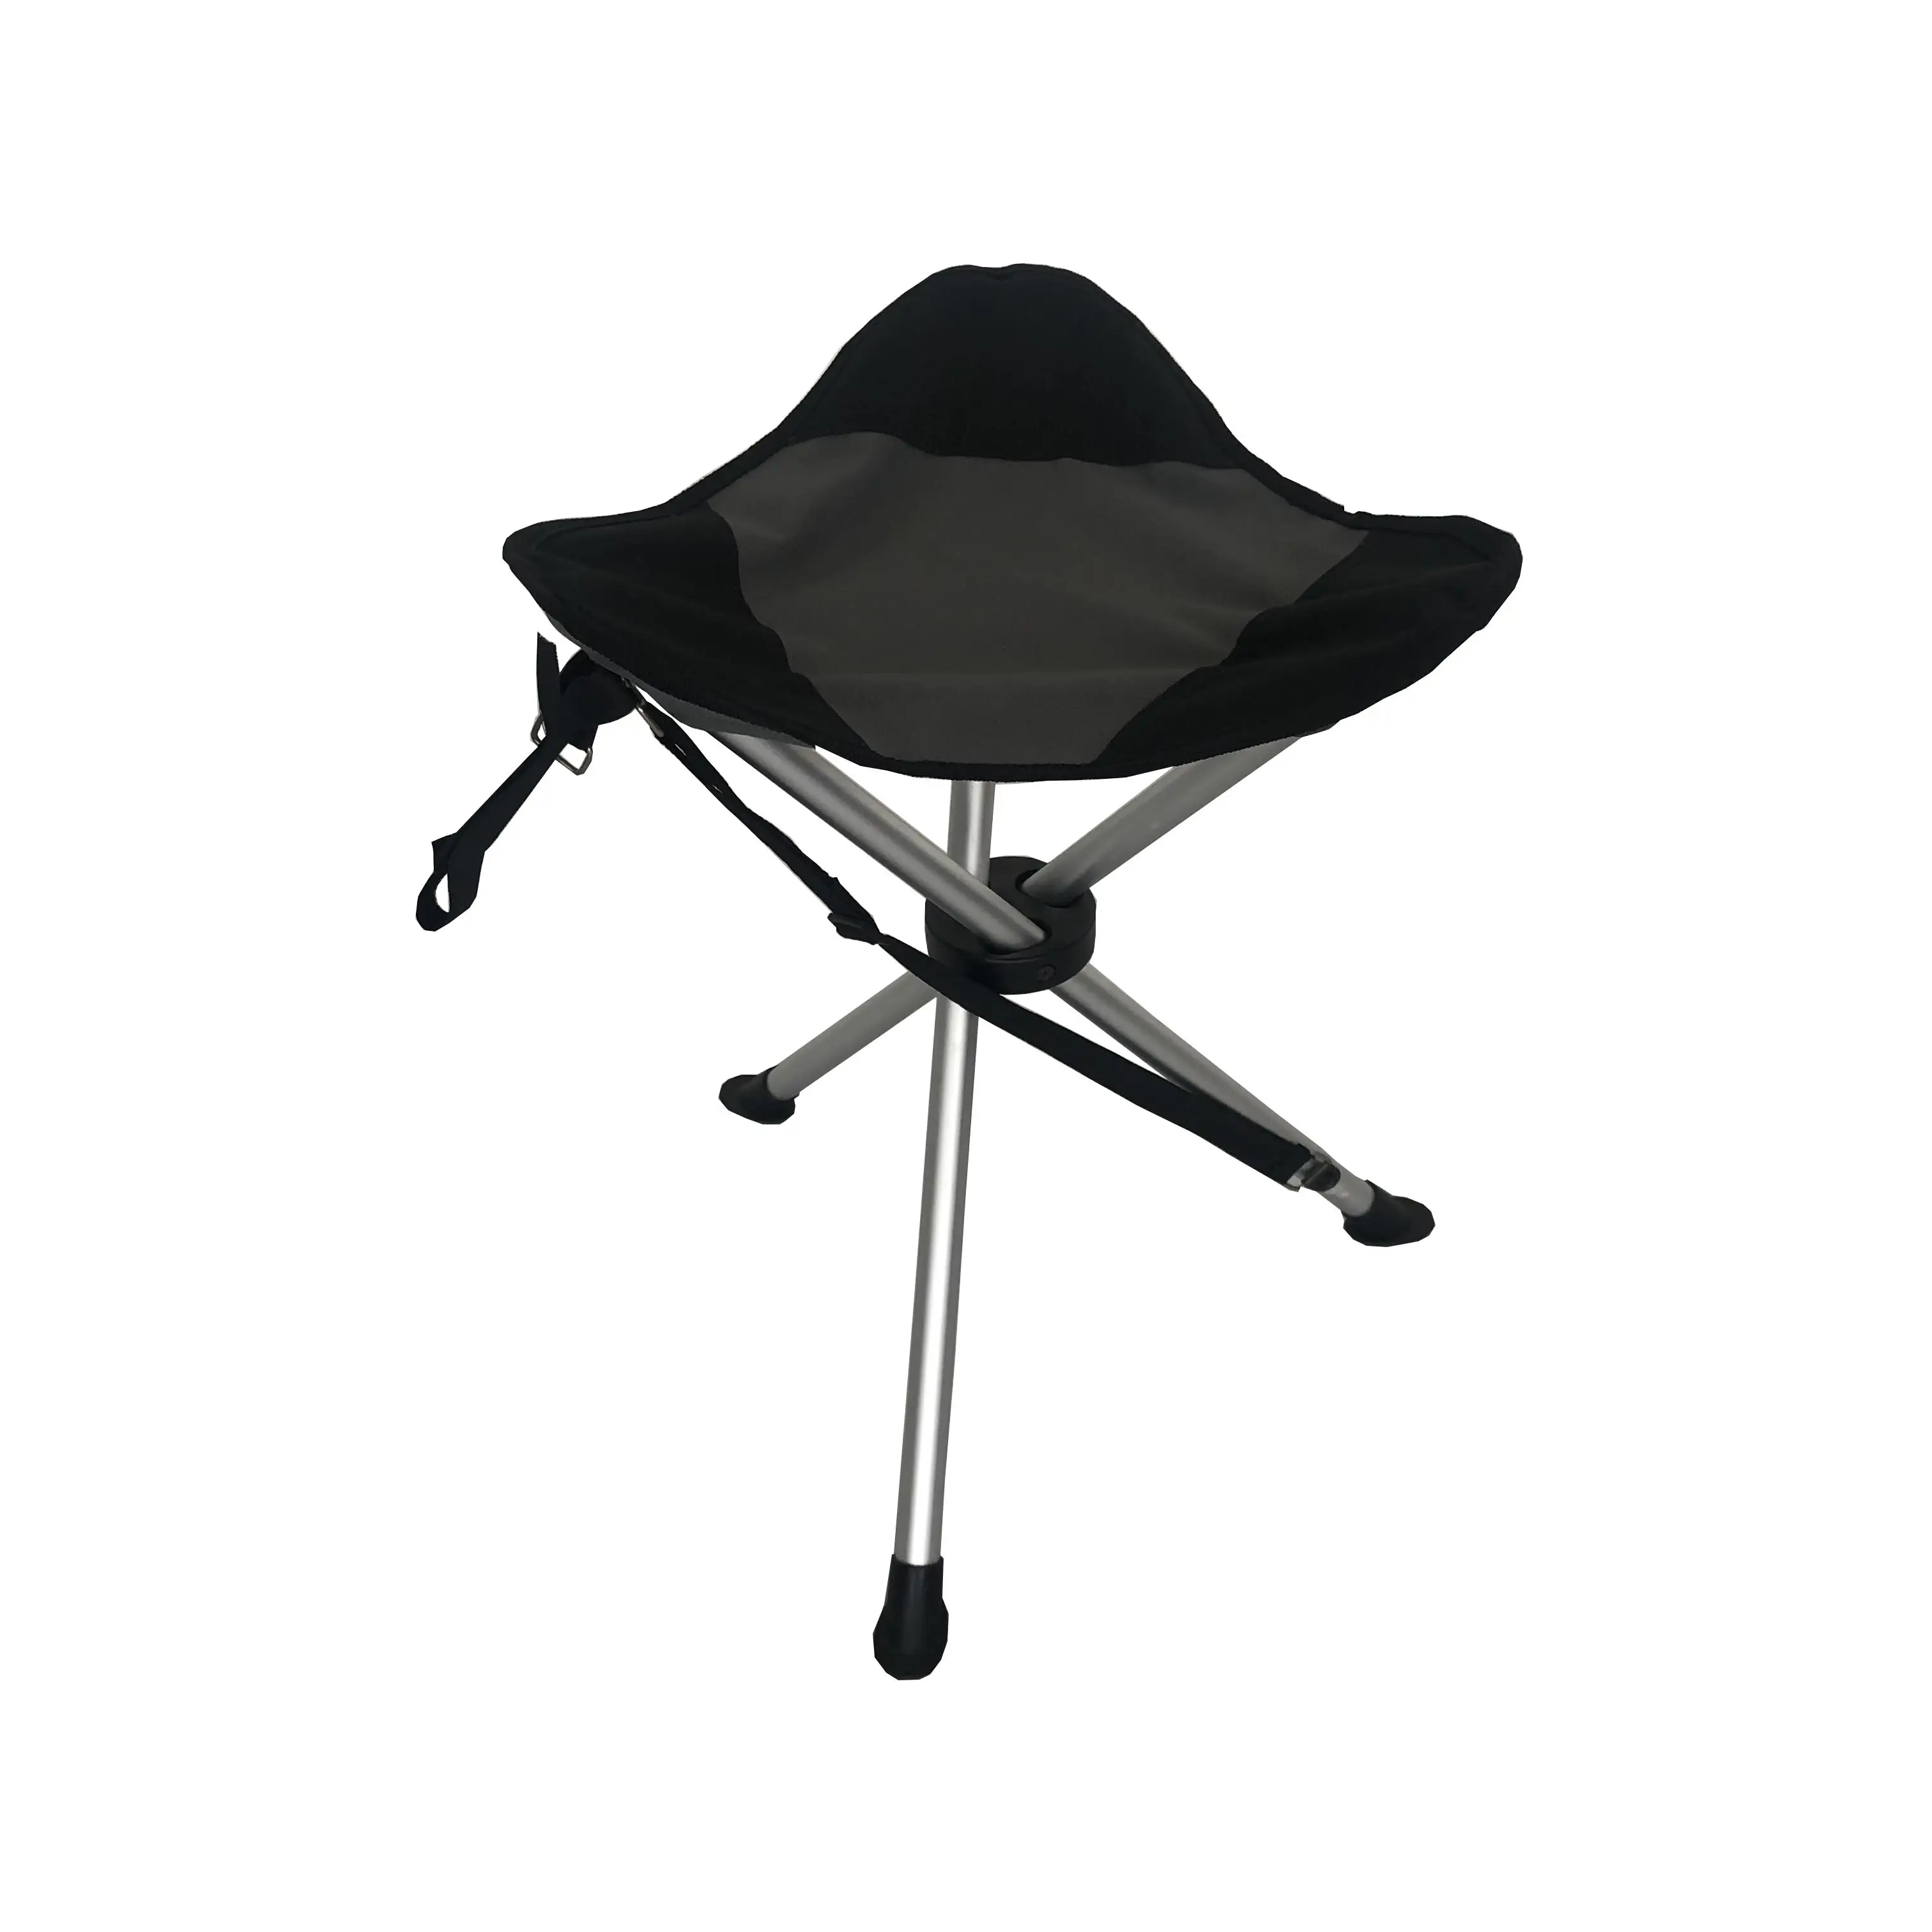 Trépied portable avec cadre en acier, chaise de camping, tabouret d'extérieur, chaise de pêche pliante pour le jardin et les voyages